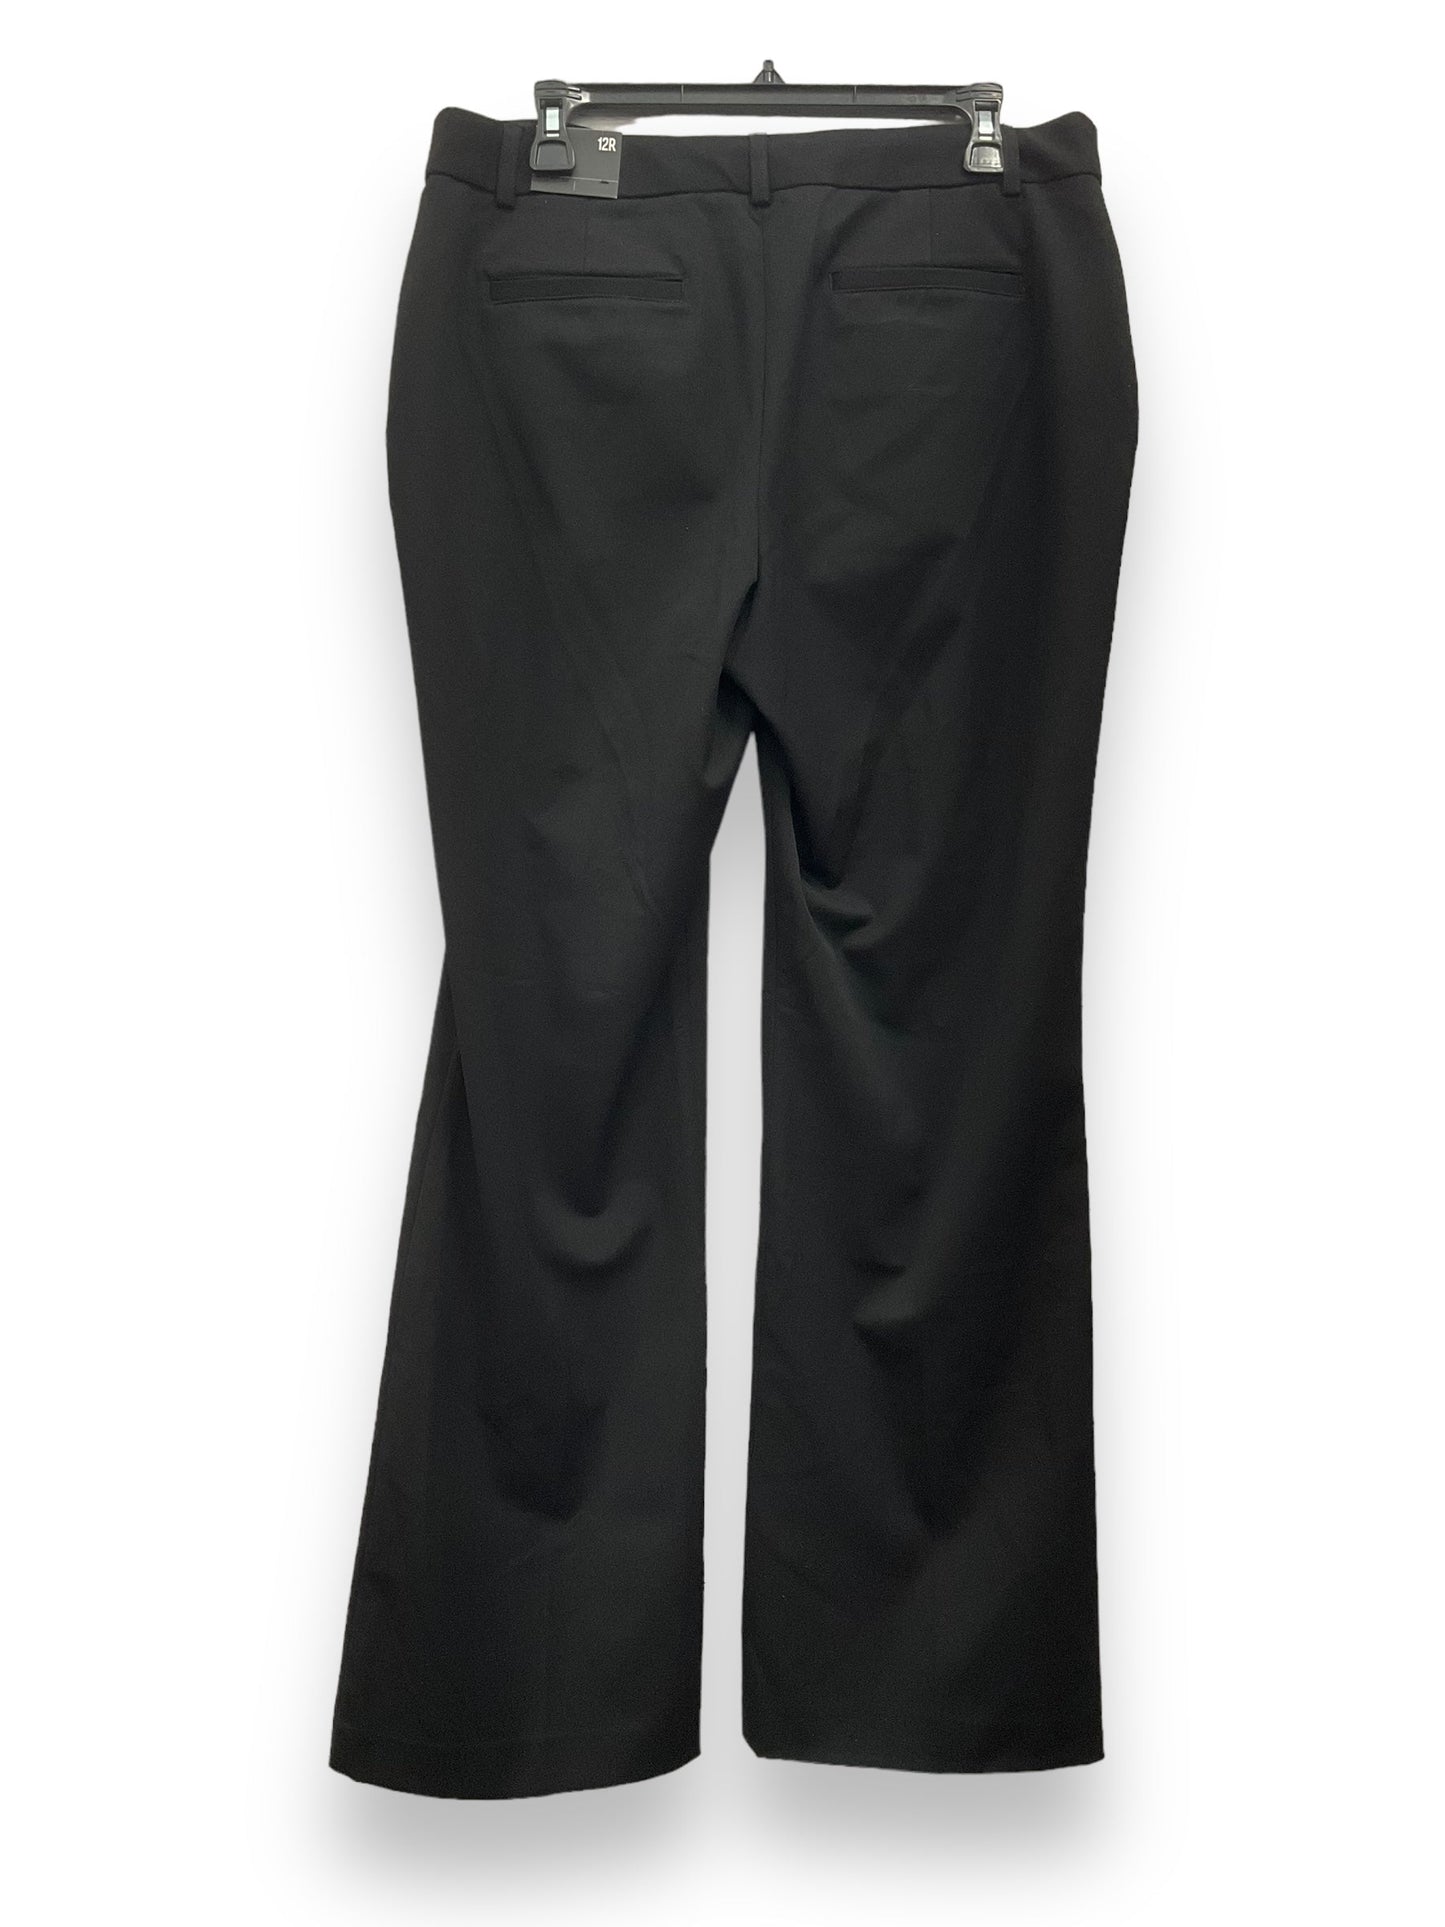 Black Pants Dress Express, Size 12